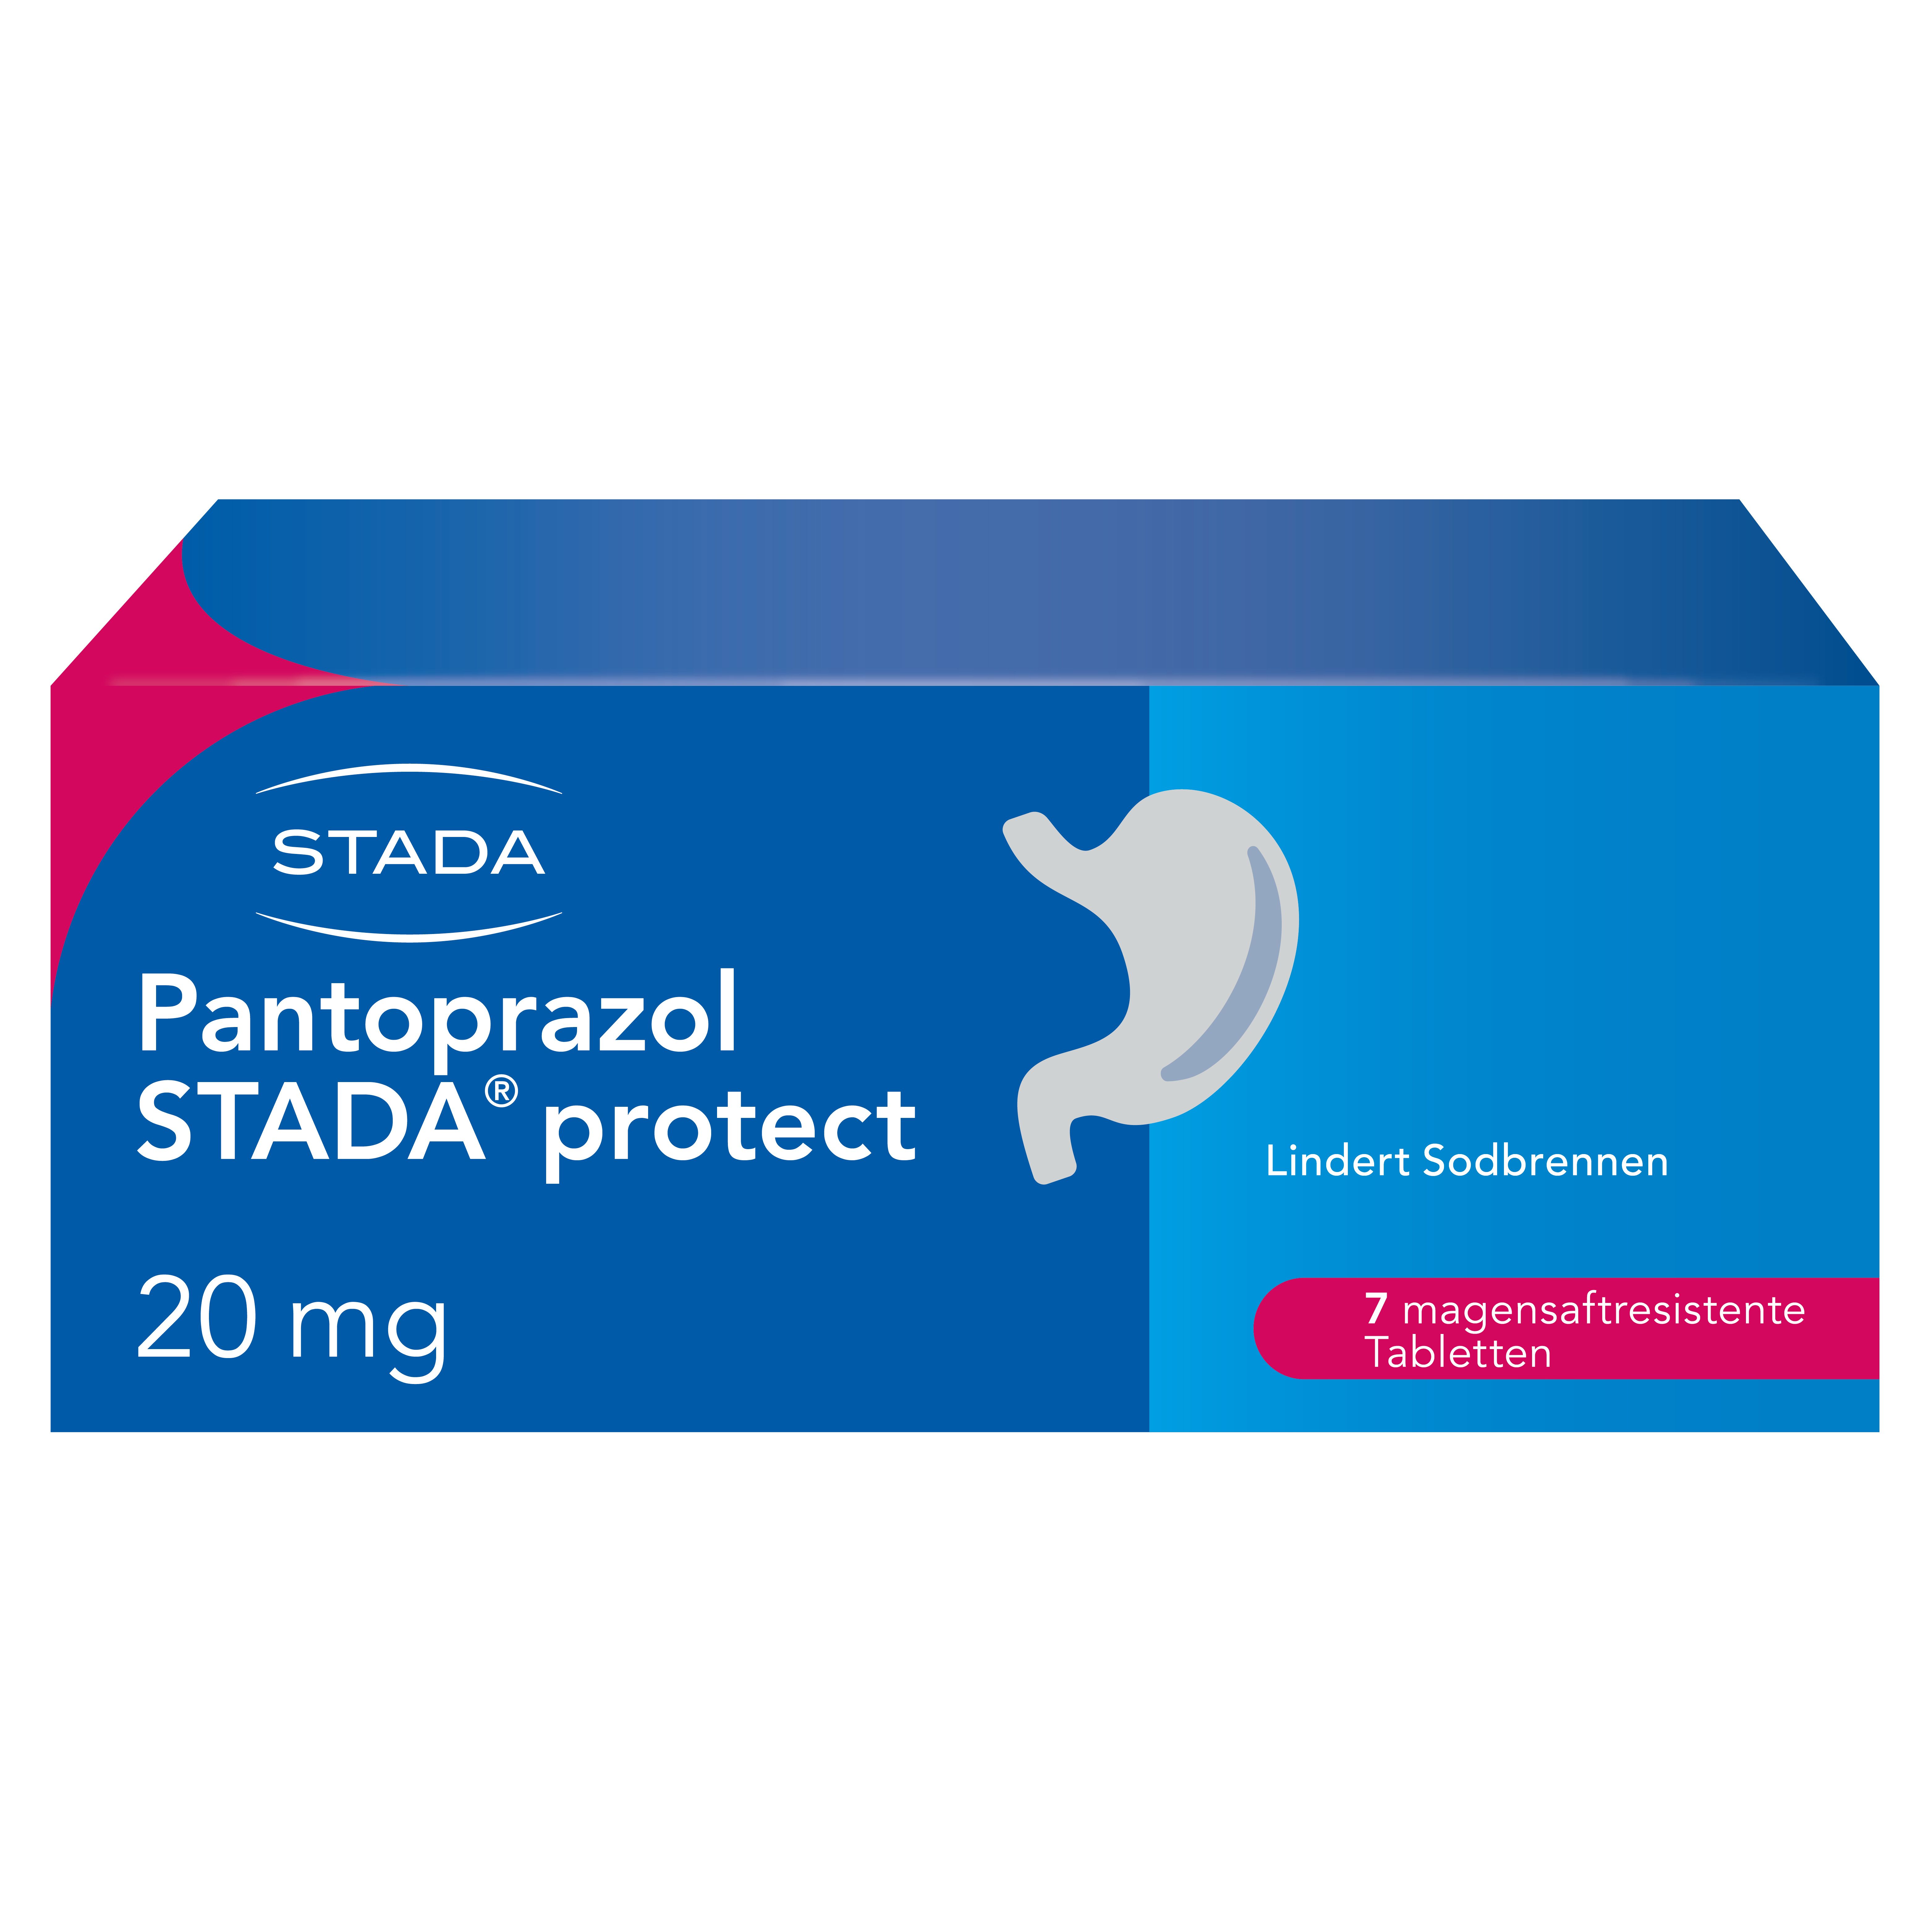 Pantoprazol STADA® protect 20 mg